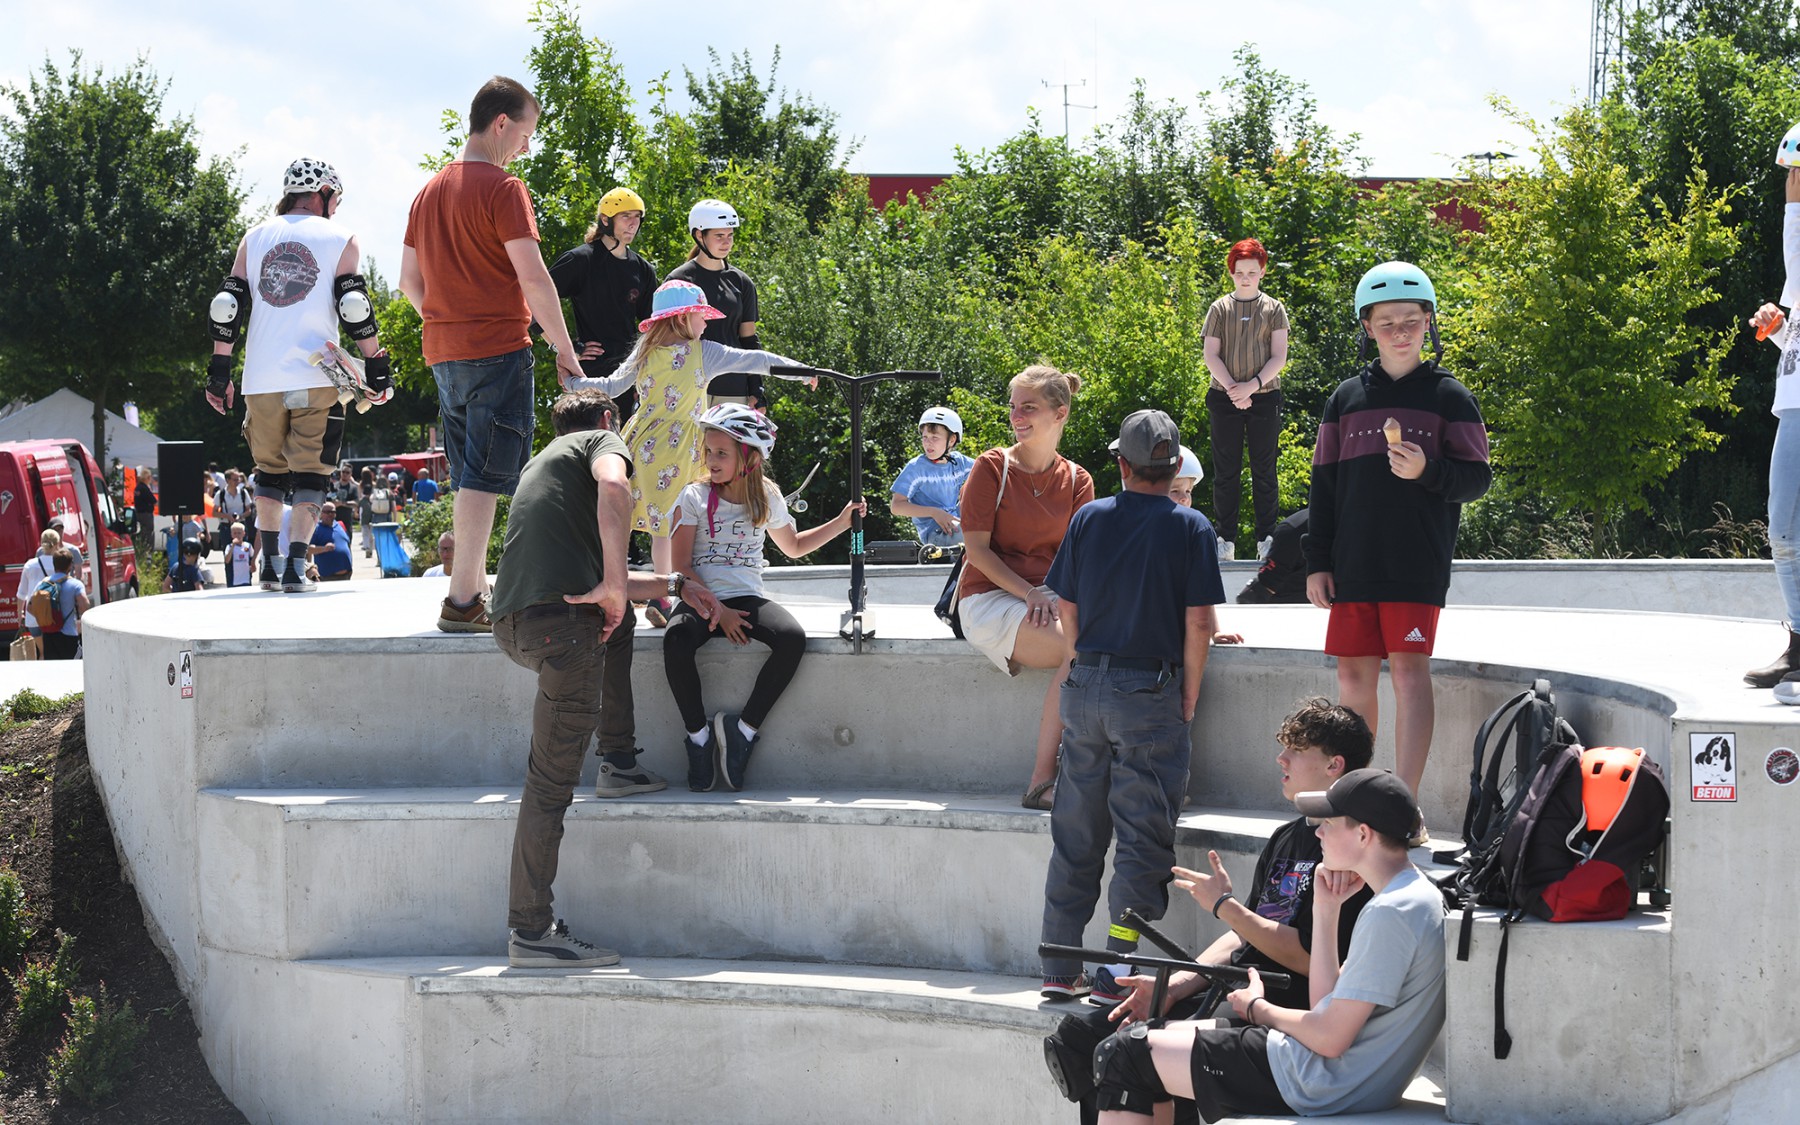 competitionline_Galery_Meerbusch-Bike-und-Skatepark_17